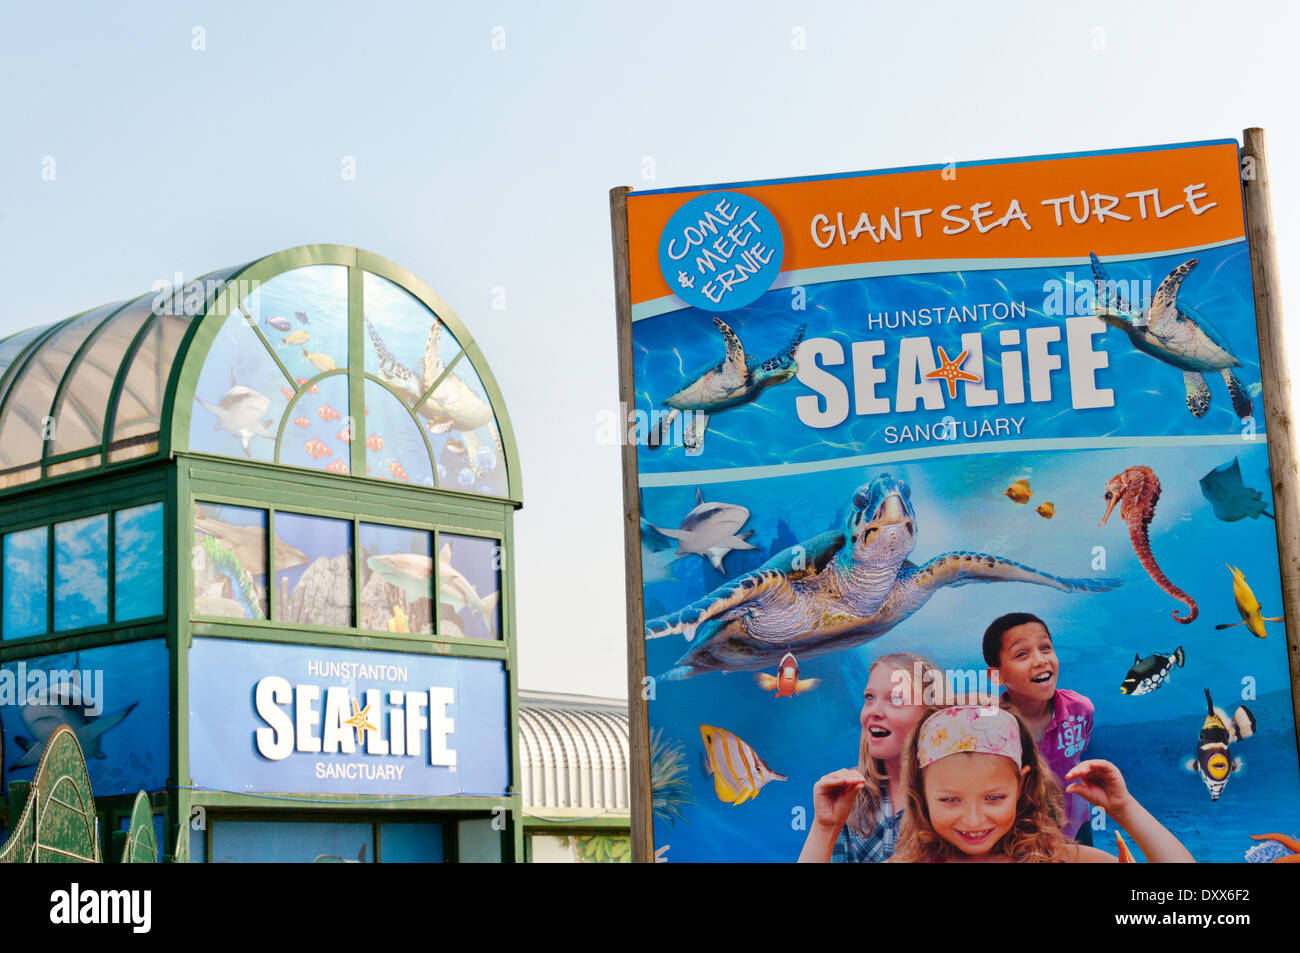 Hunstanton Sea Life Sanctuary Banque D'Images